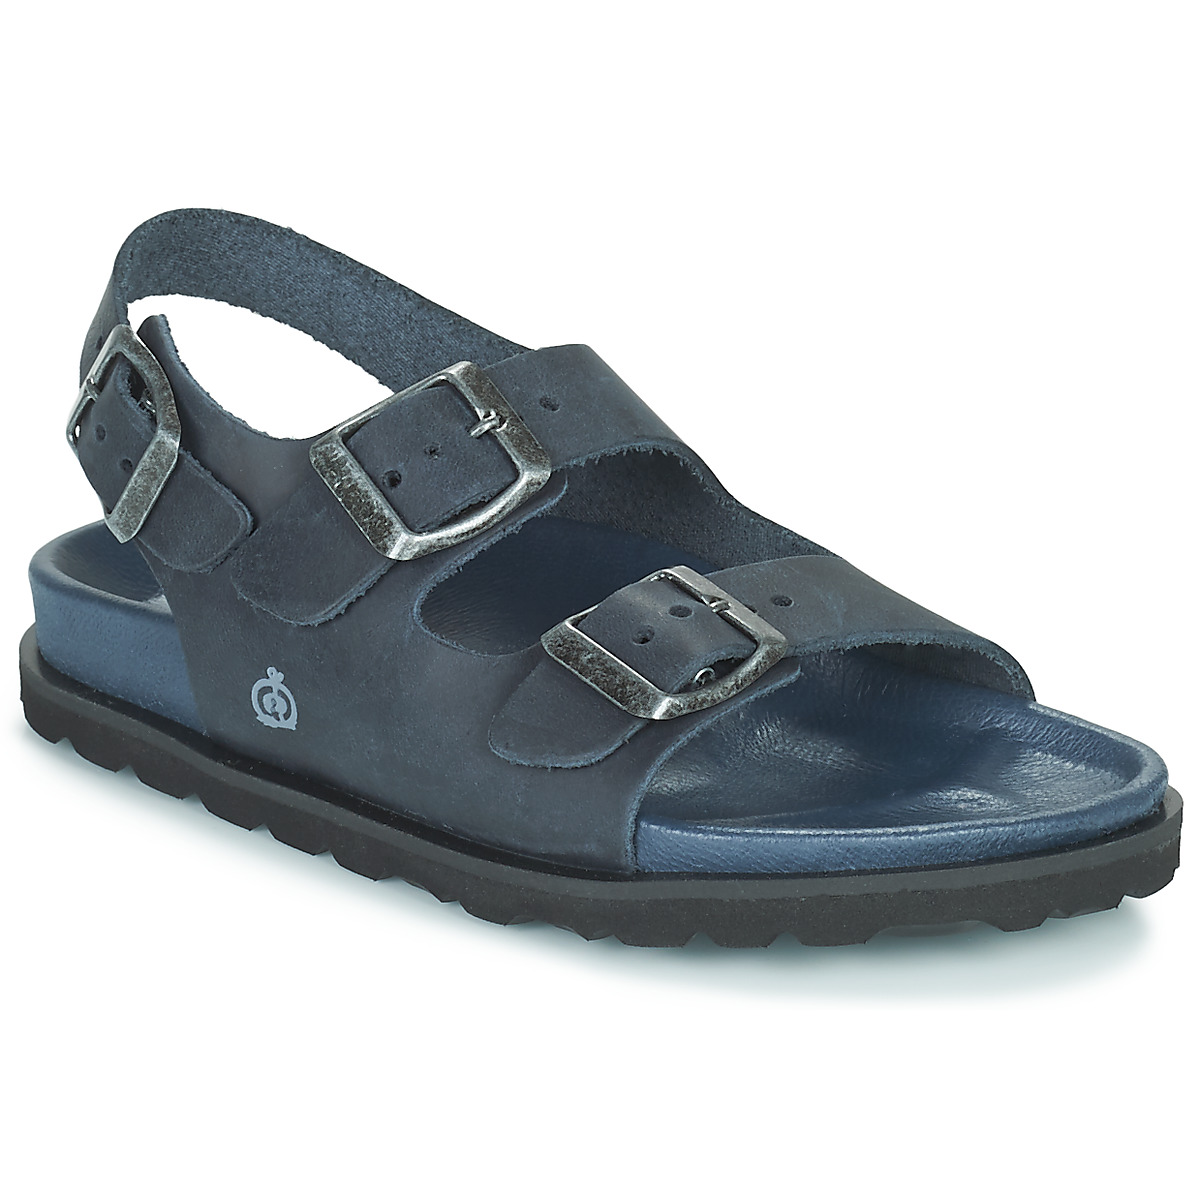 Topánky Chlapec Sandále Citrouille et Compagnie NEW 12 Modrá